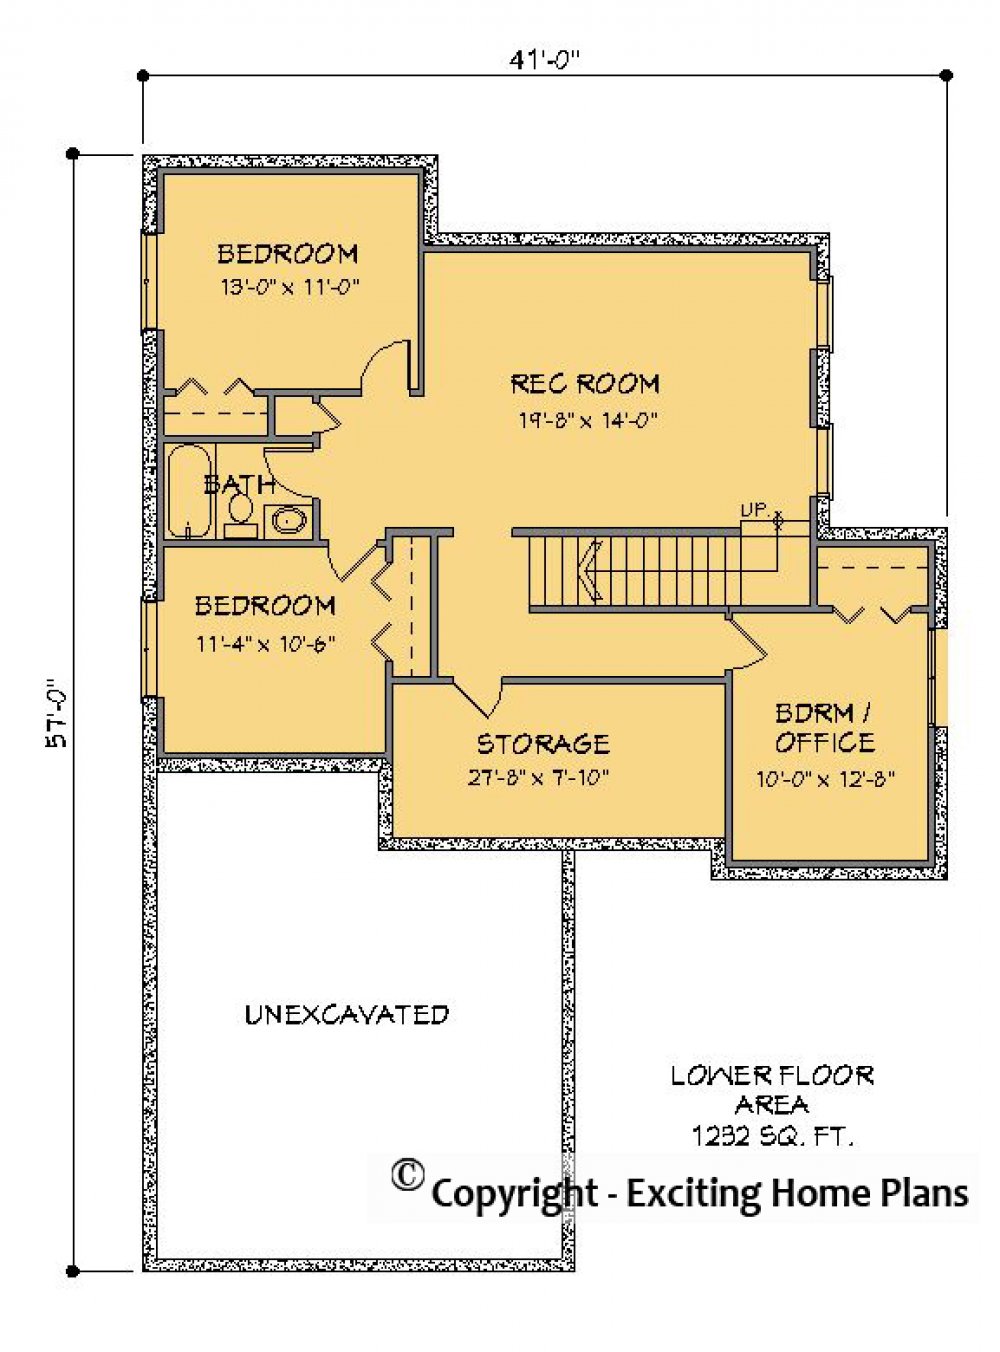 House Plan E1212-10 Lower Floor Plan